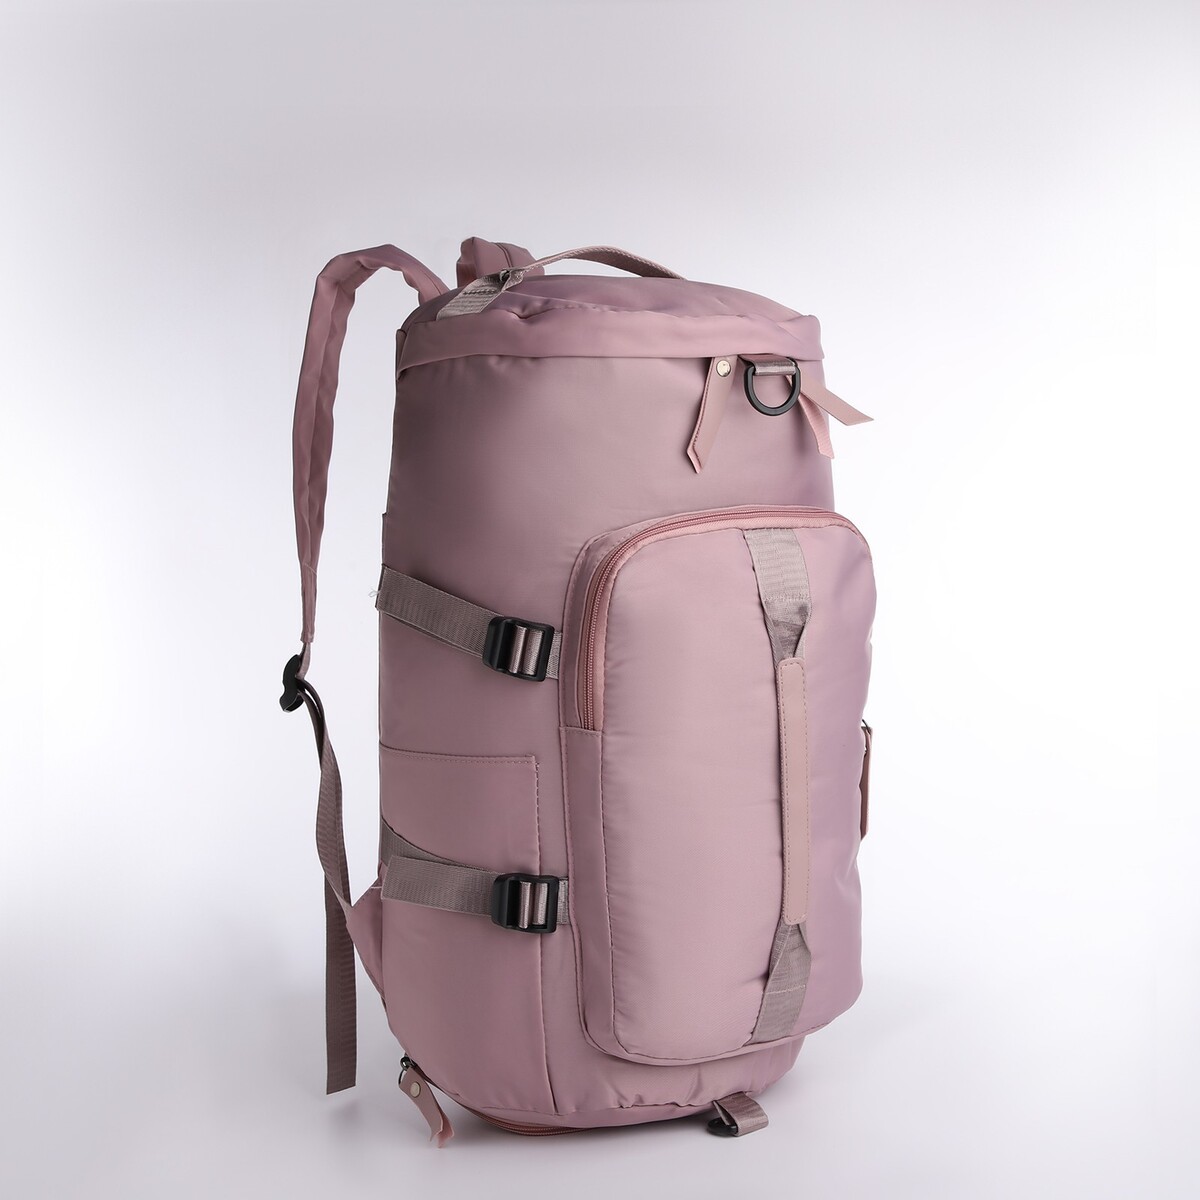 Рюкзак-сумка на молнии, 4 наружных кармана, отделение для обуви, цвет розовый рюкзак сумка на молнии 4 наружных кармана отделение для обуви розовый